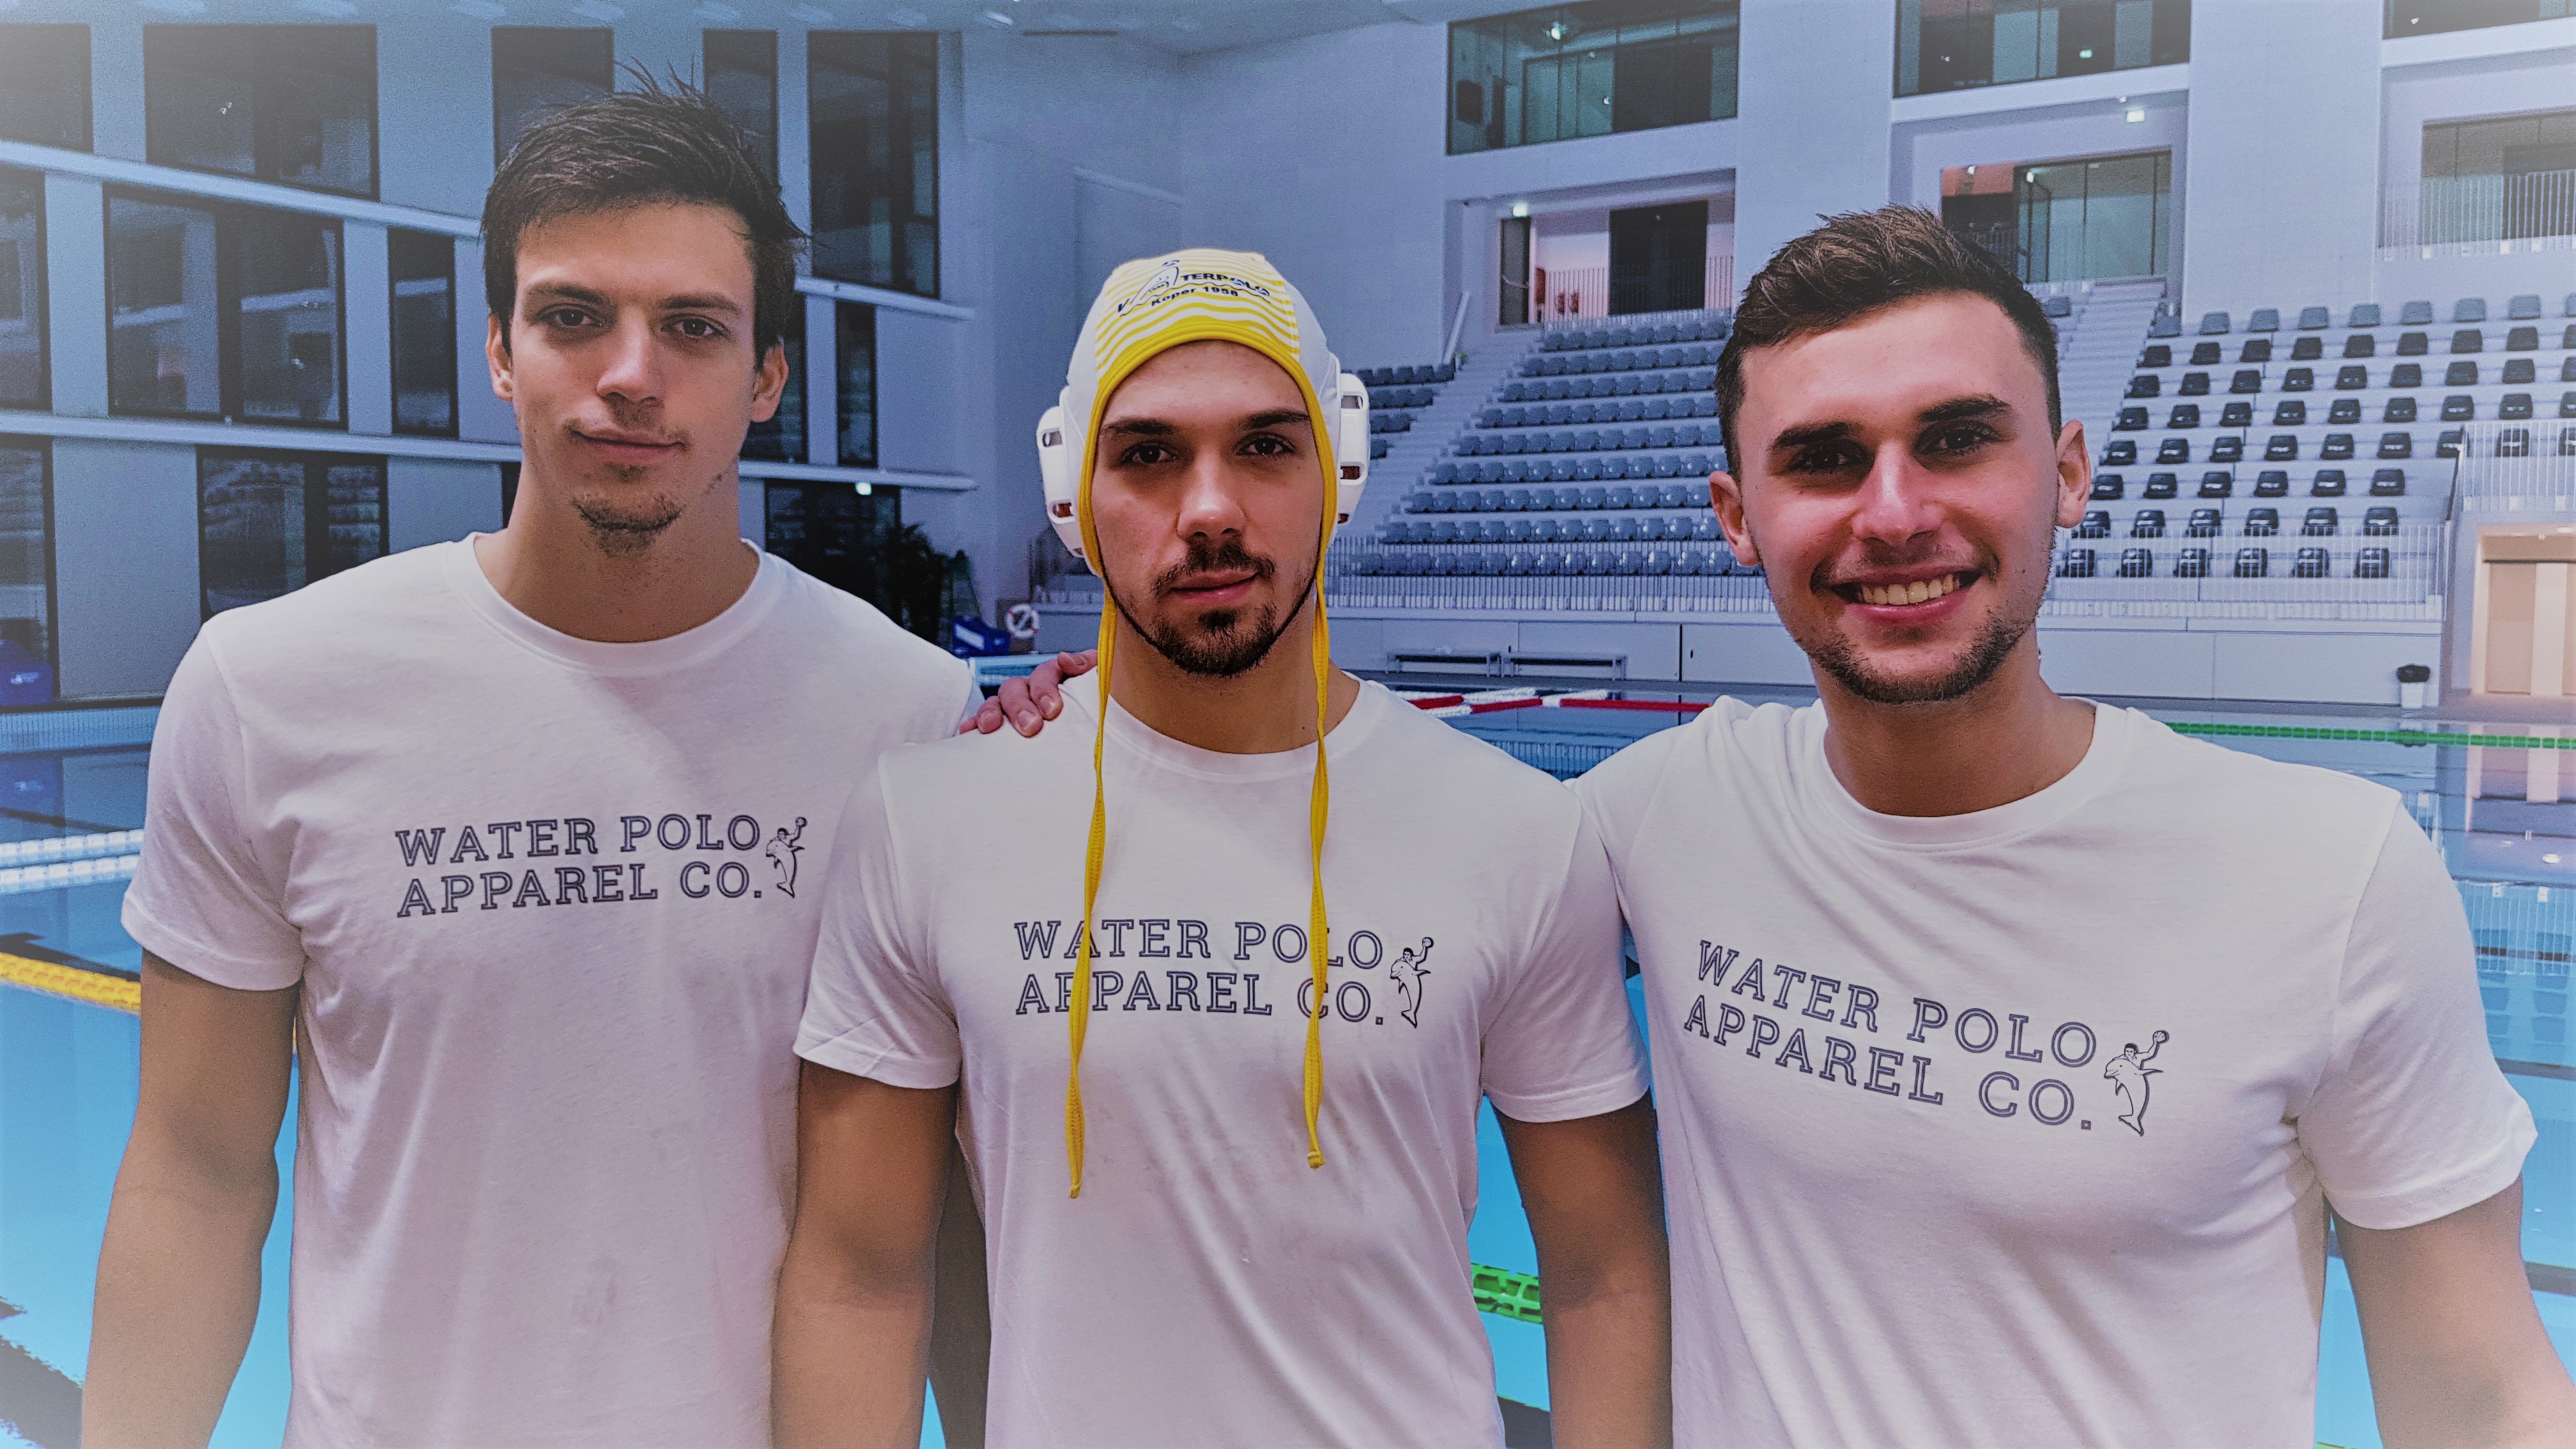 Aleksa Dimitrijevic, Milisav Janosevic and Djordje Sormaz of waterpolo club koper